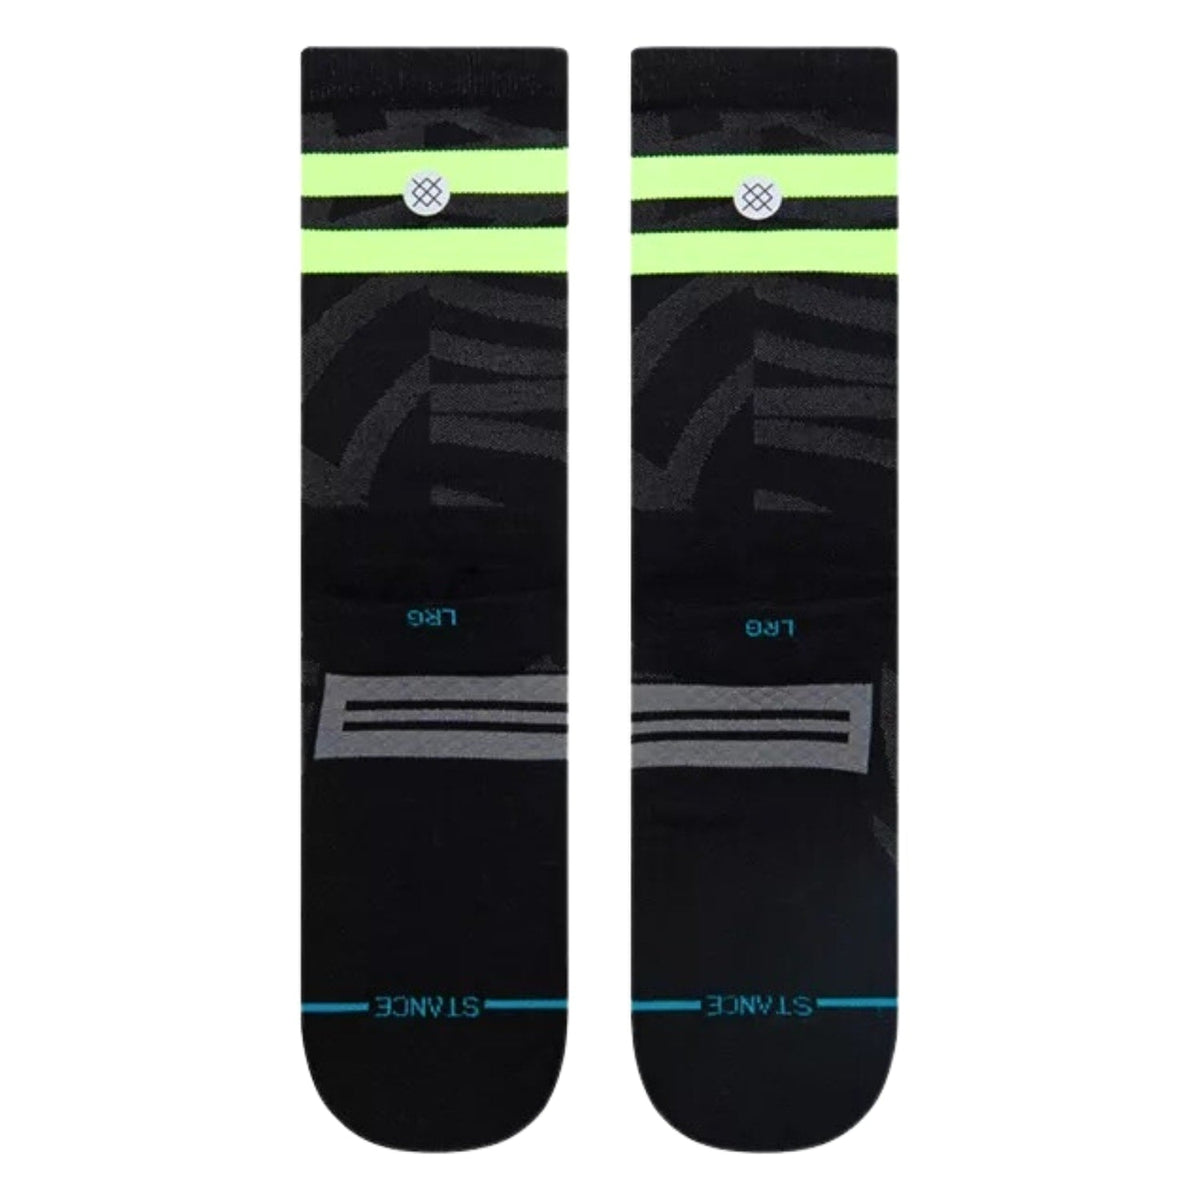 Stance Fuel Socks - Black - Unisex Running/Training Socks by Stance M (UK5-7.5)